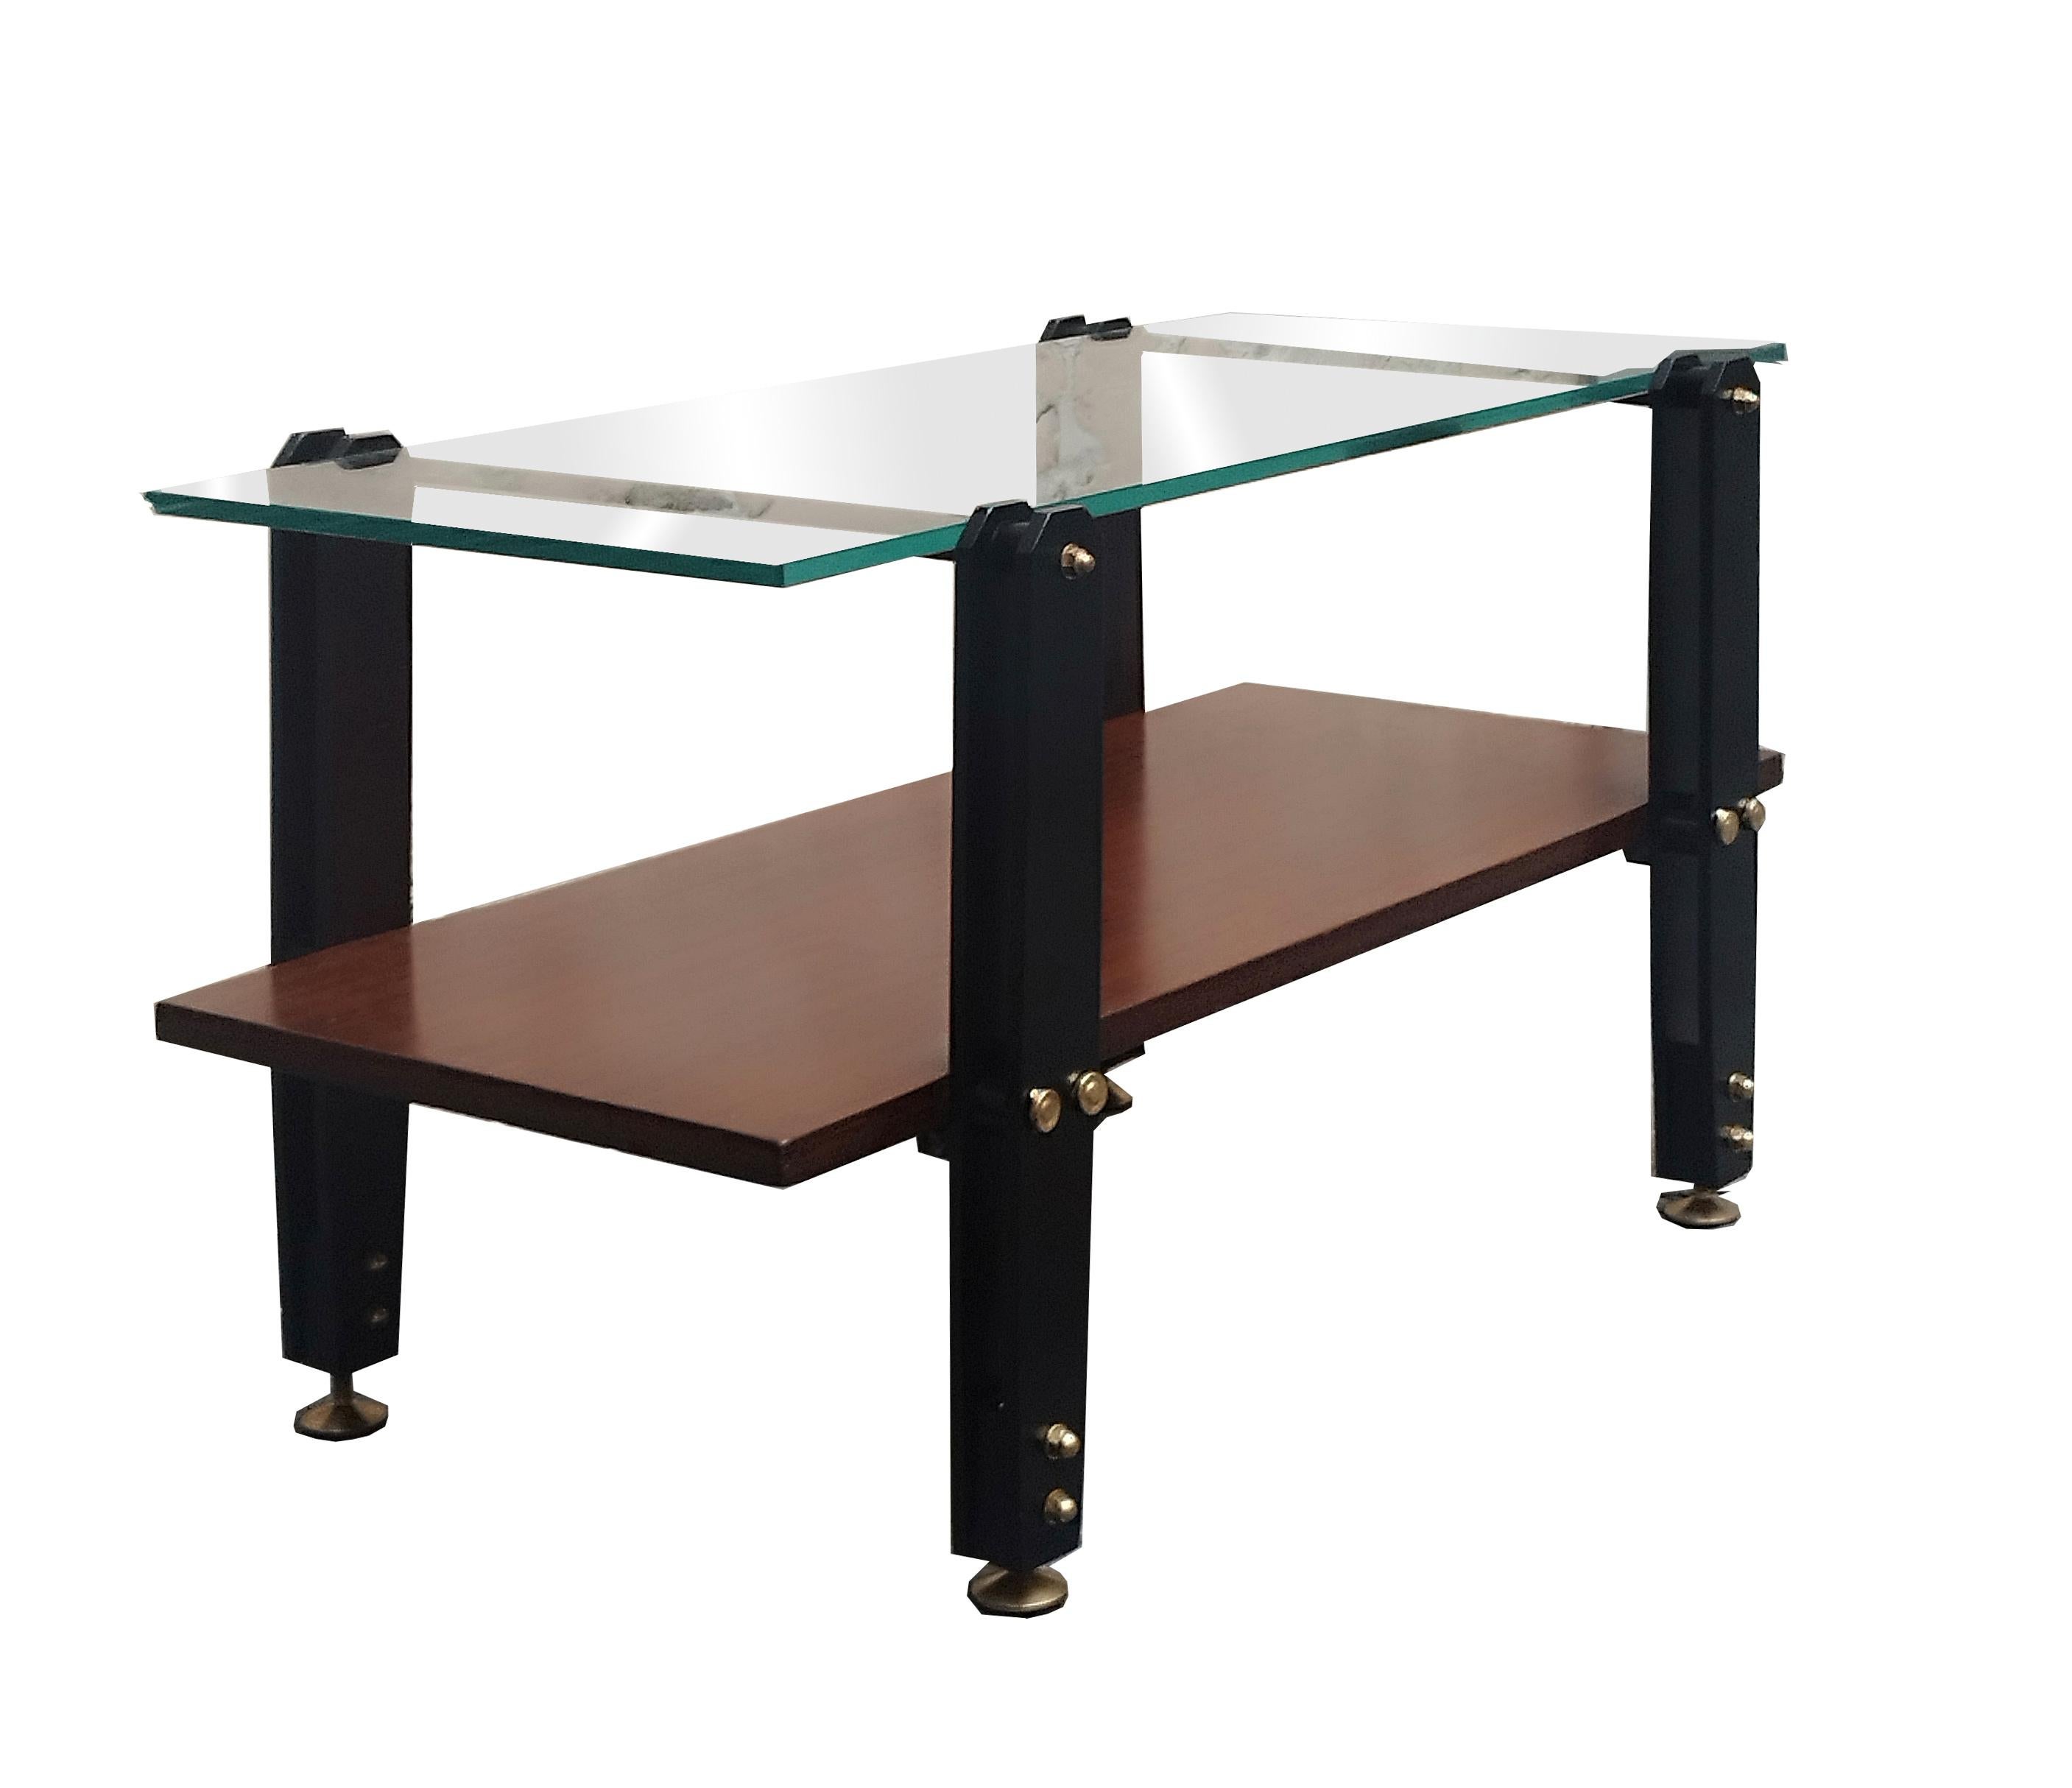 Table basse italienne en bois, structure en laiton et métal, avec un plateau en verre épais. Petit éclat sur le coin